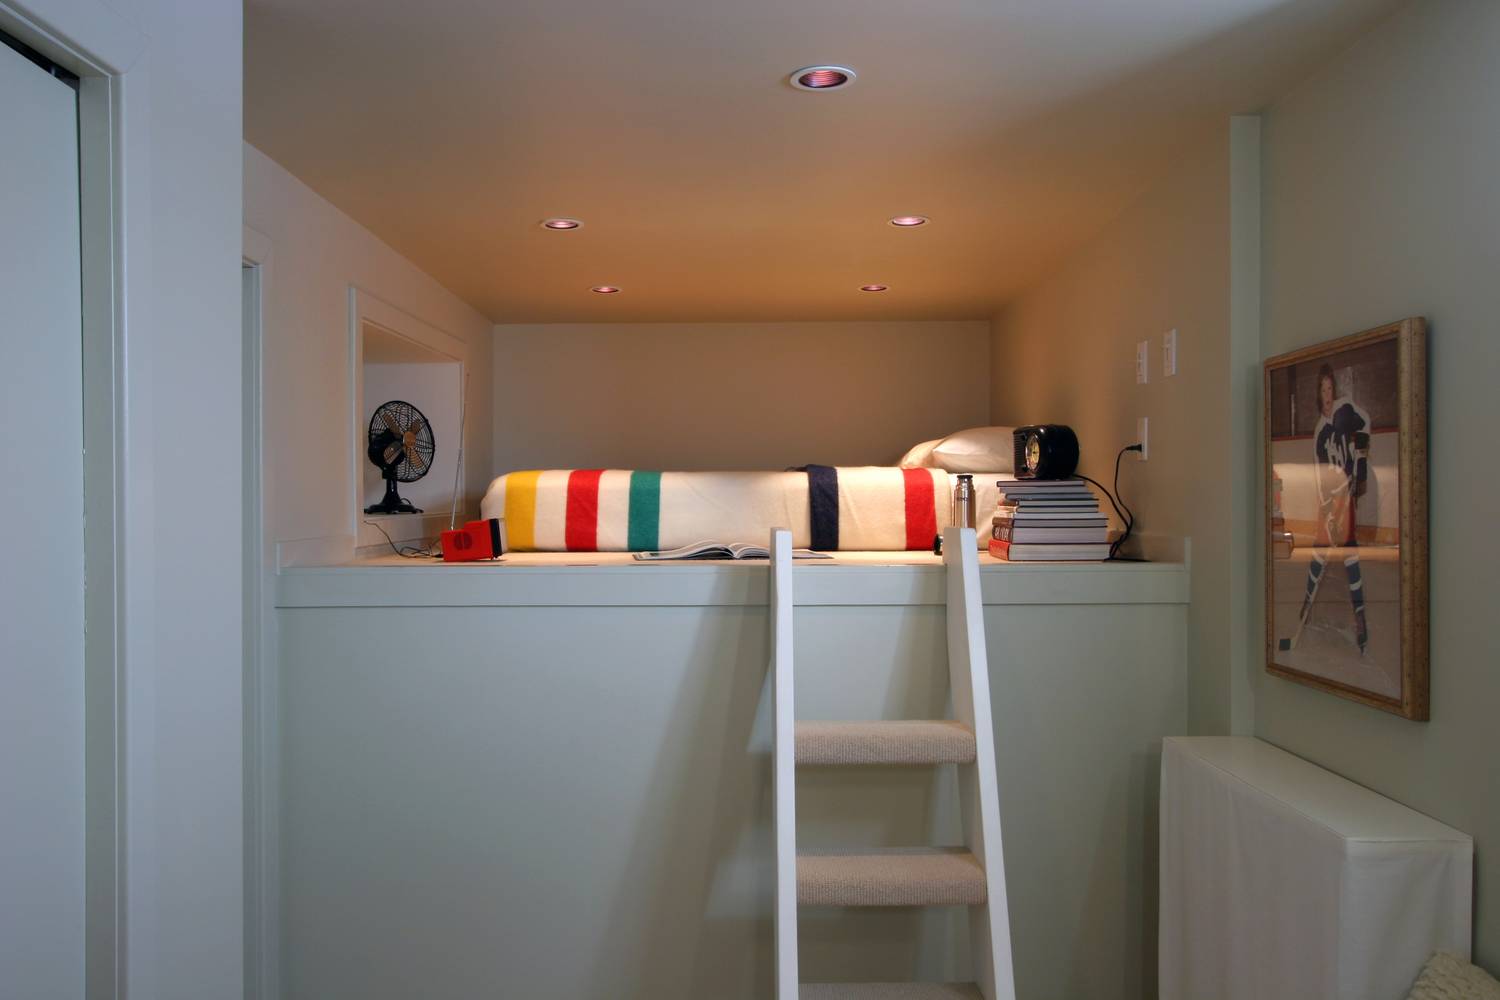 A legelterjedtebb megoldás a galériák berendezésére a minimális bútorzat, ami gyakran csak az alváshoz szükséges ágyat jelenti egy-két spot lámpával.